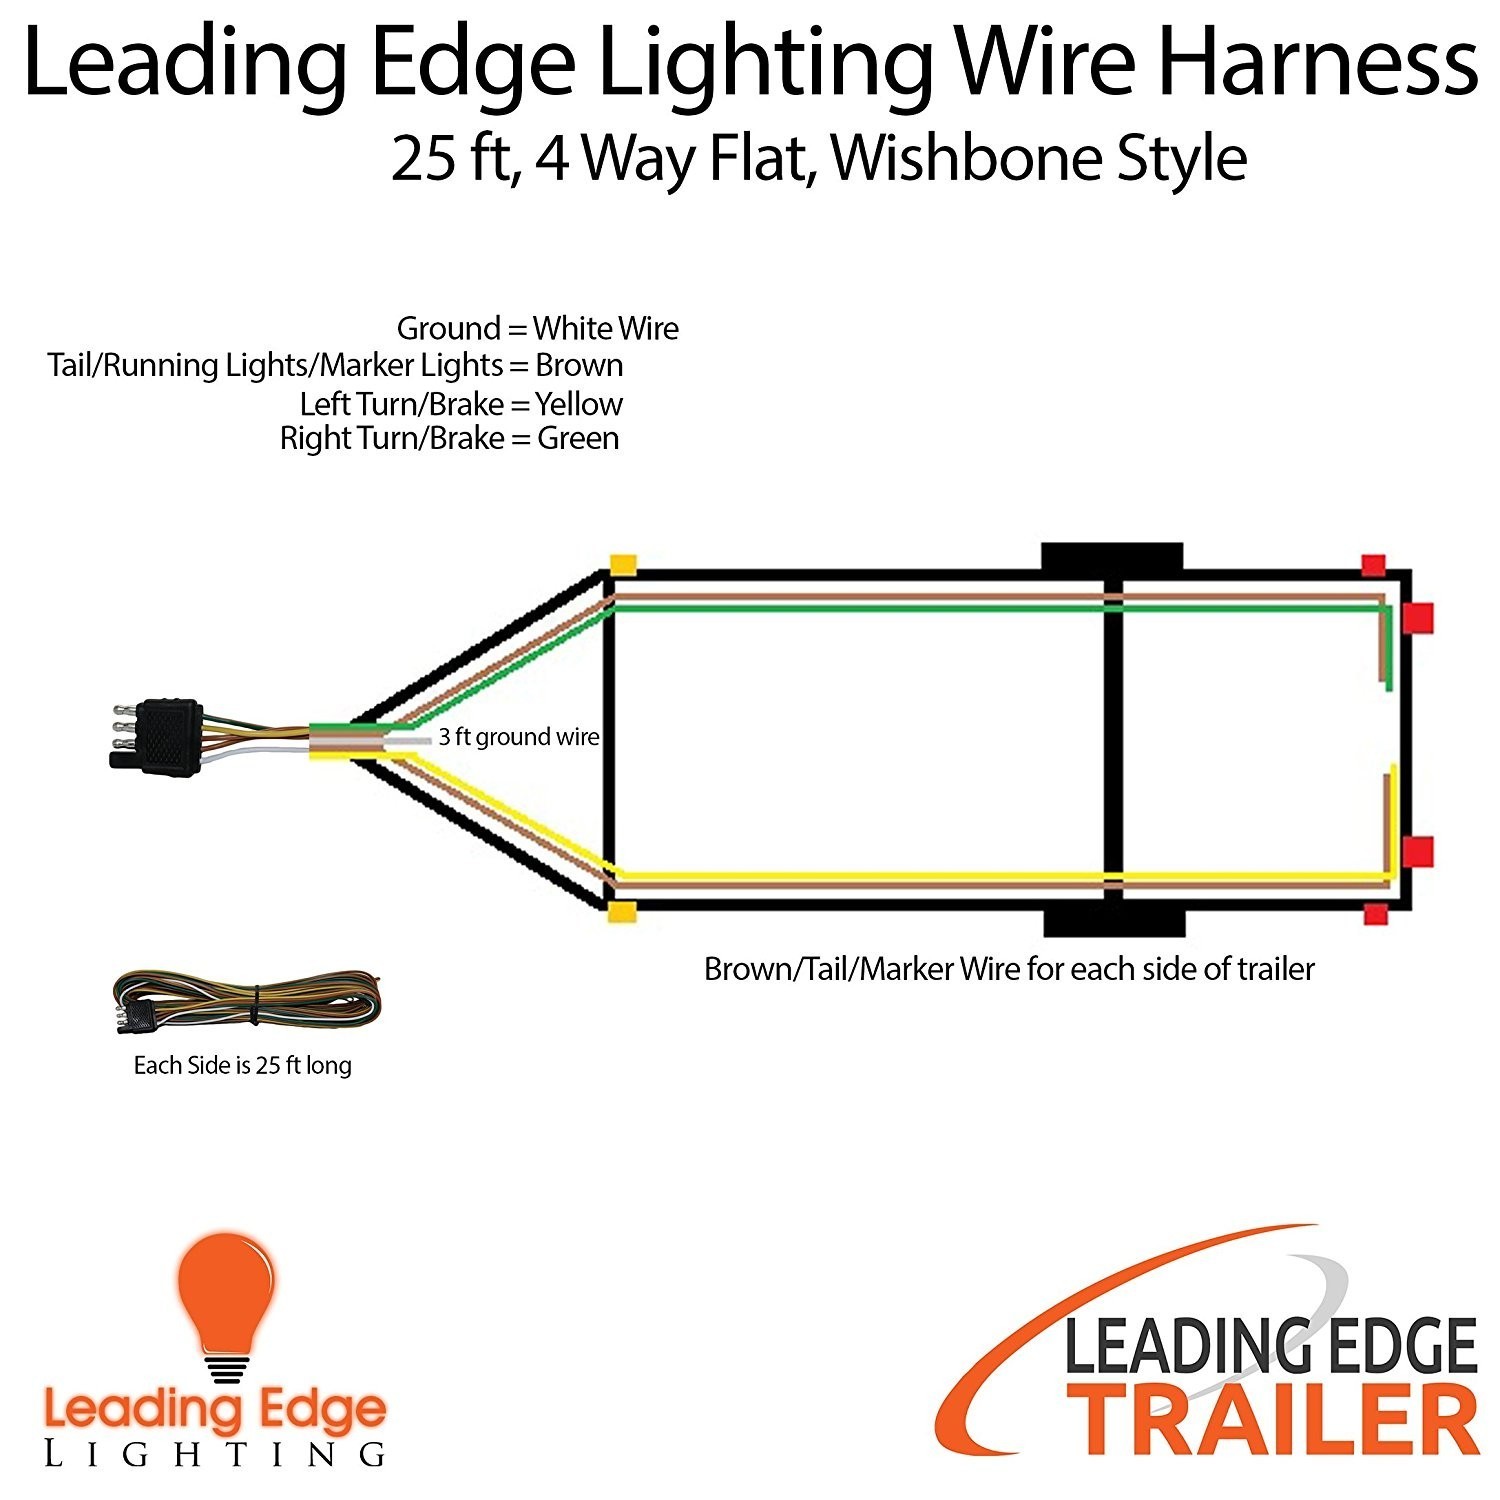 4 way flat wiring diagram wiring data 4 Way Wiring Diagram wiring diagram flat trailer